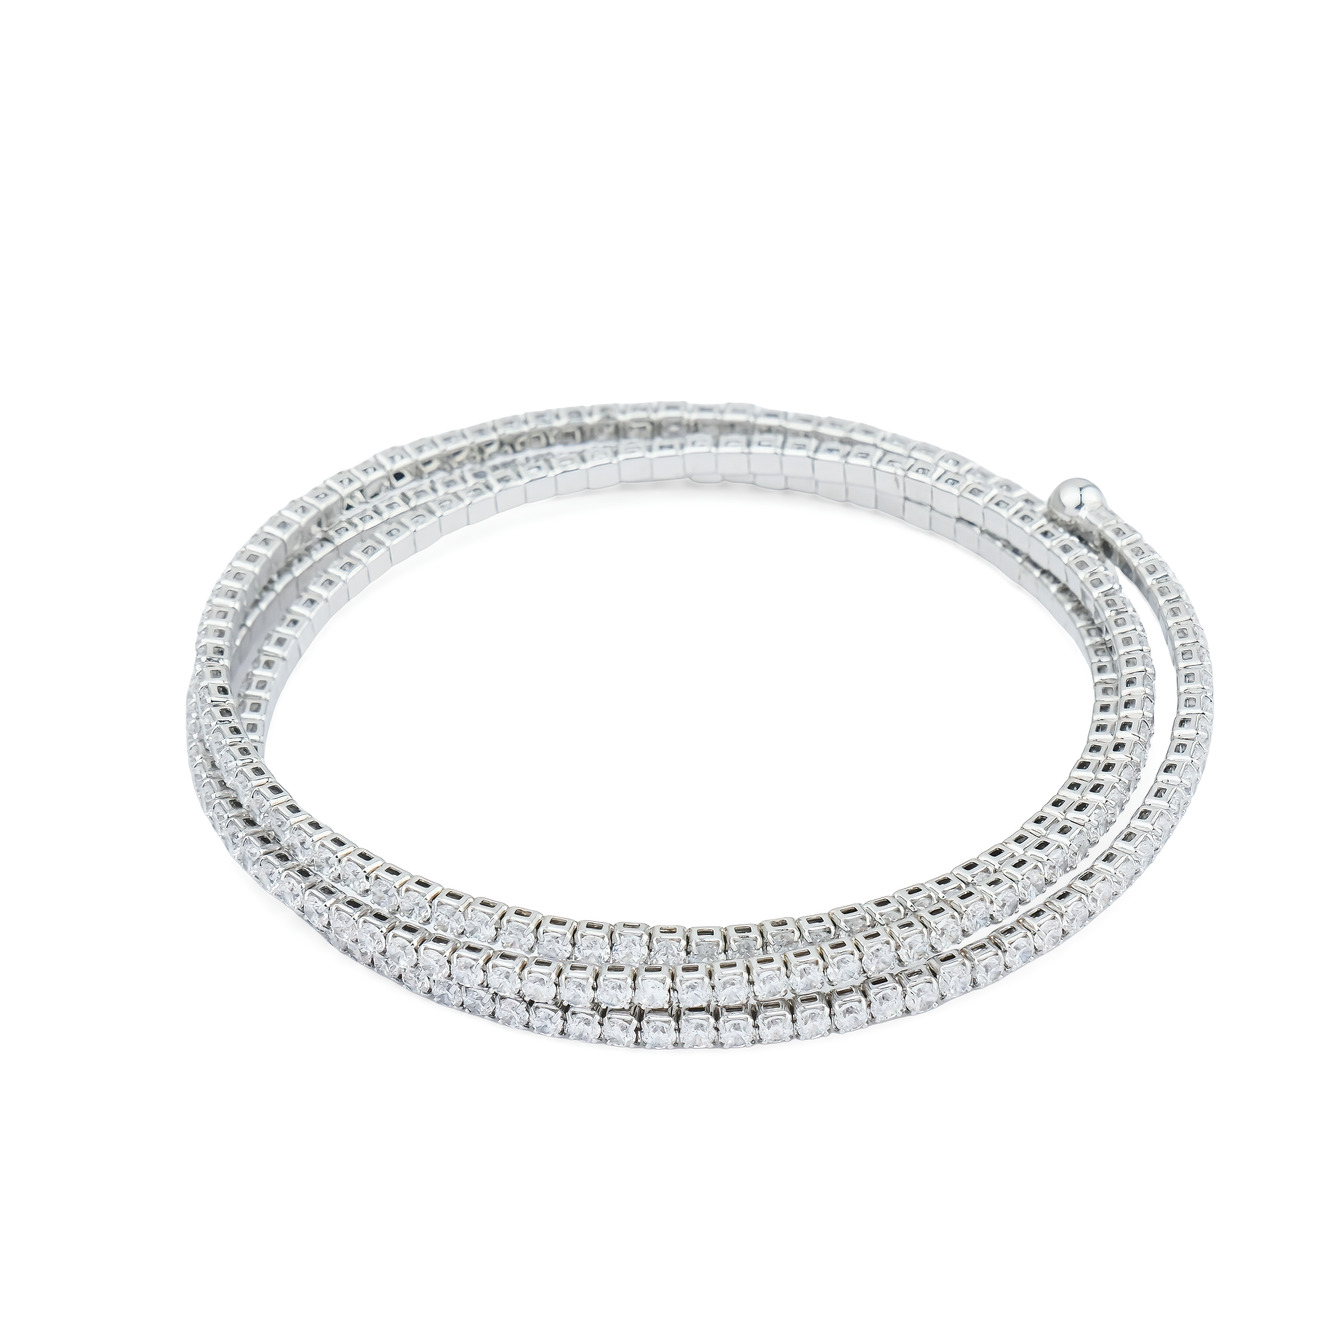 Herald Percy Серебристый многослойный браслет с кристаллами herald percy серебристый тонкий браслет с белыми кристаллами